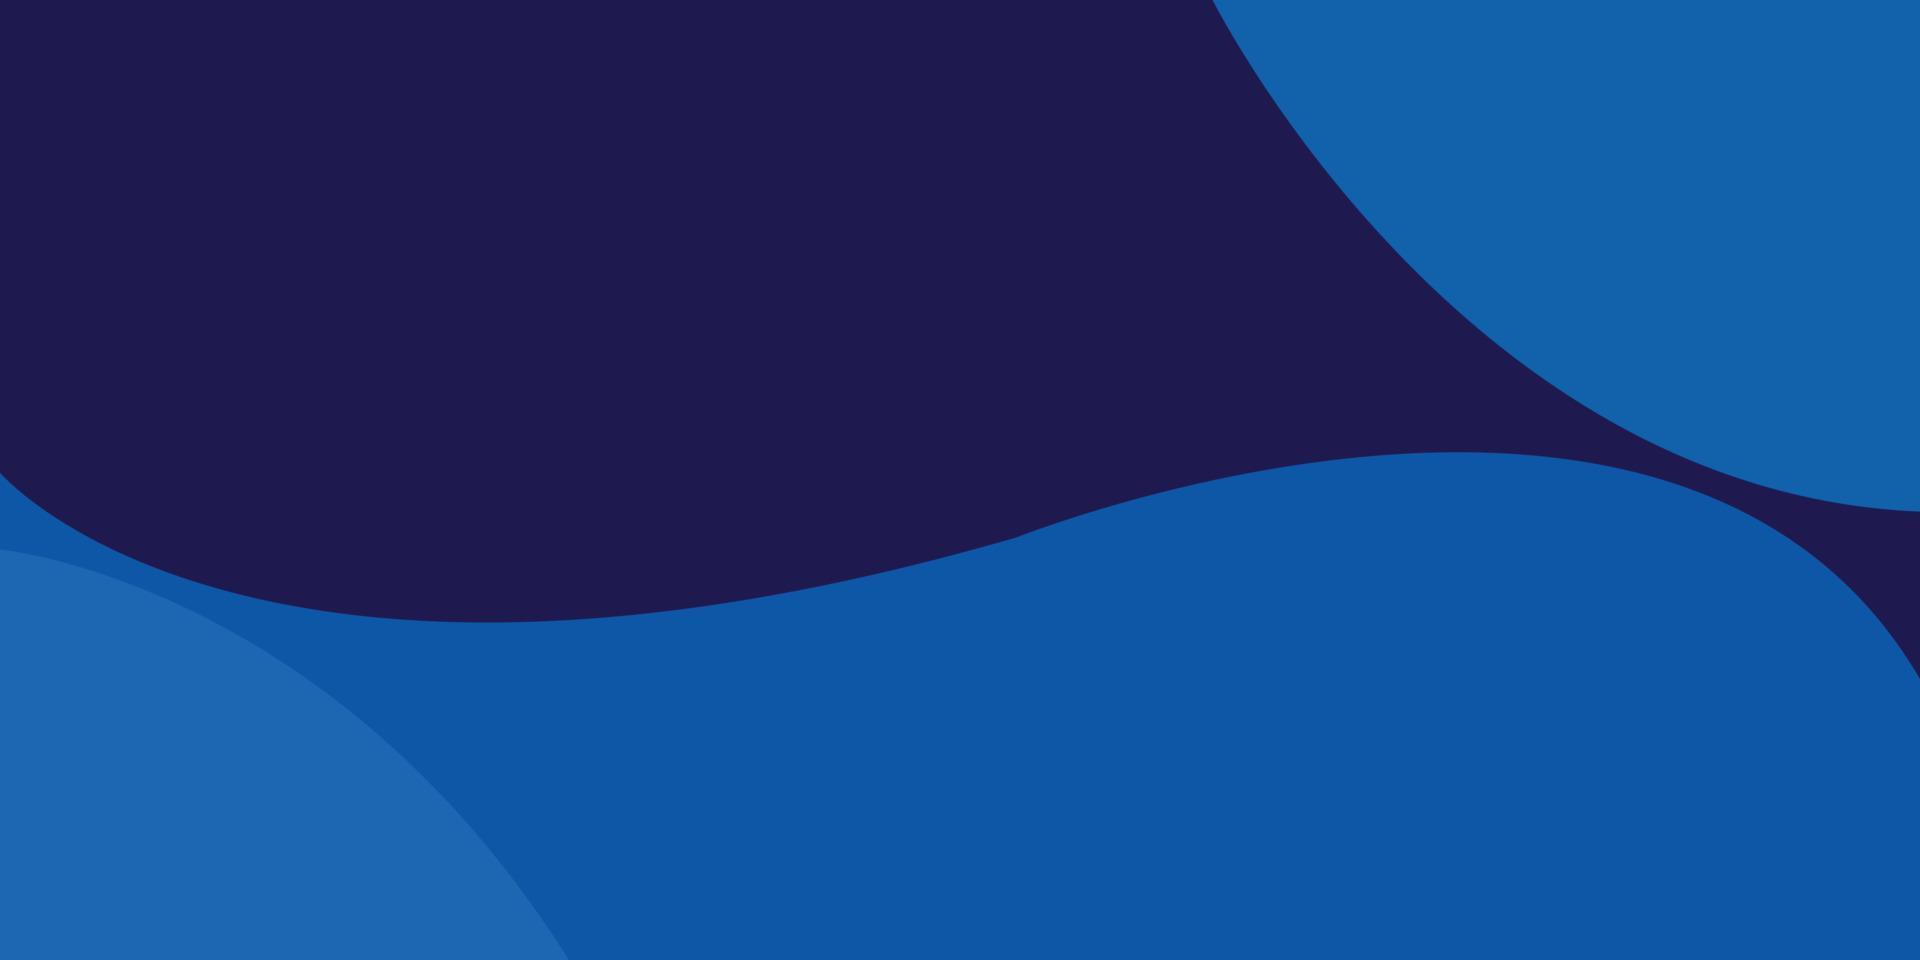 abstrato azul de camada de papel. uso abstrato azul para negócios, corporativo, instituição, pôster, modelo, festa, festivo, seminário, vetor eps10 abstrato futurista dinâmico azul, ilustração